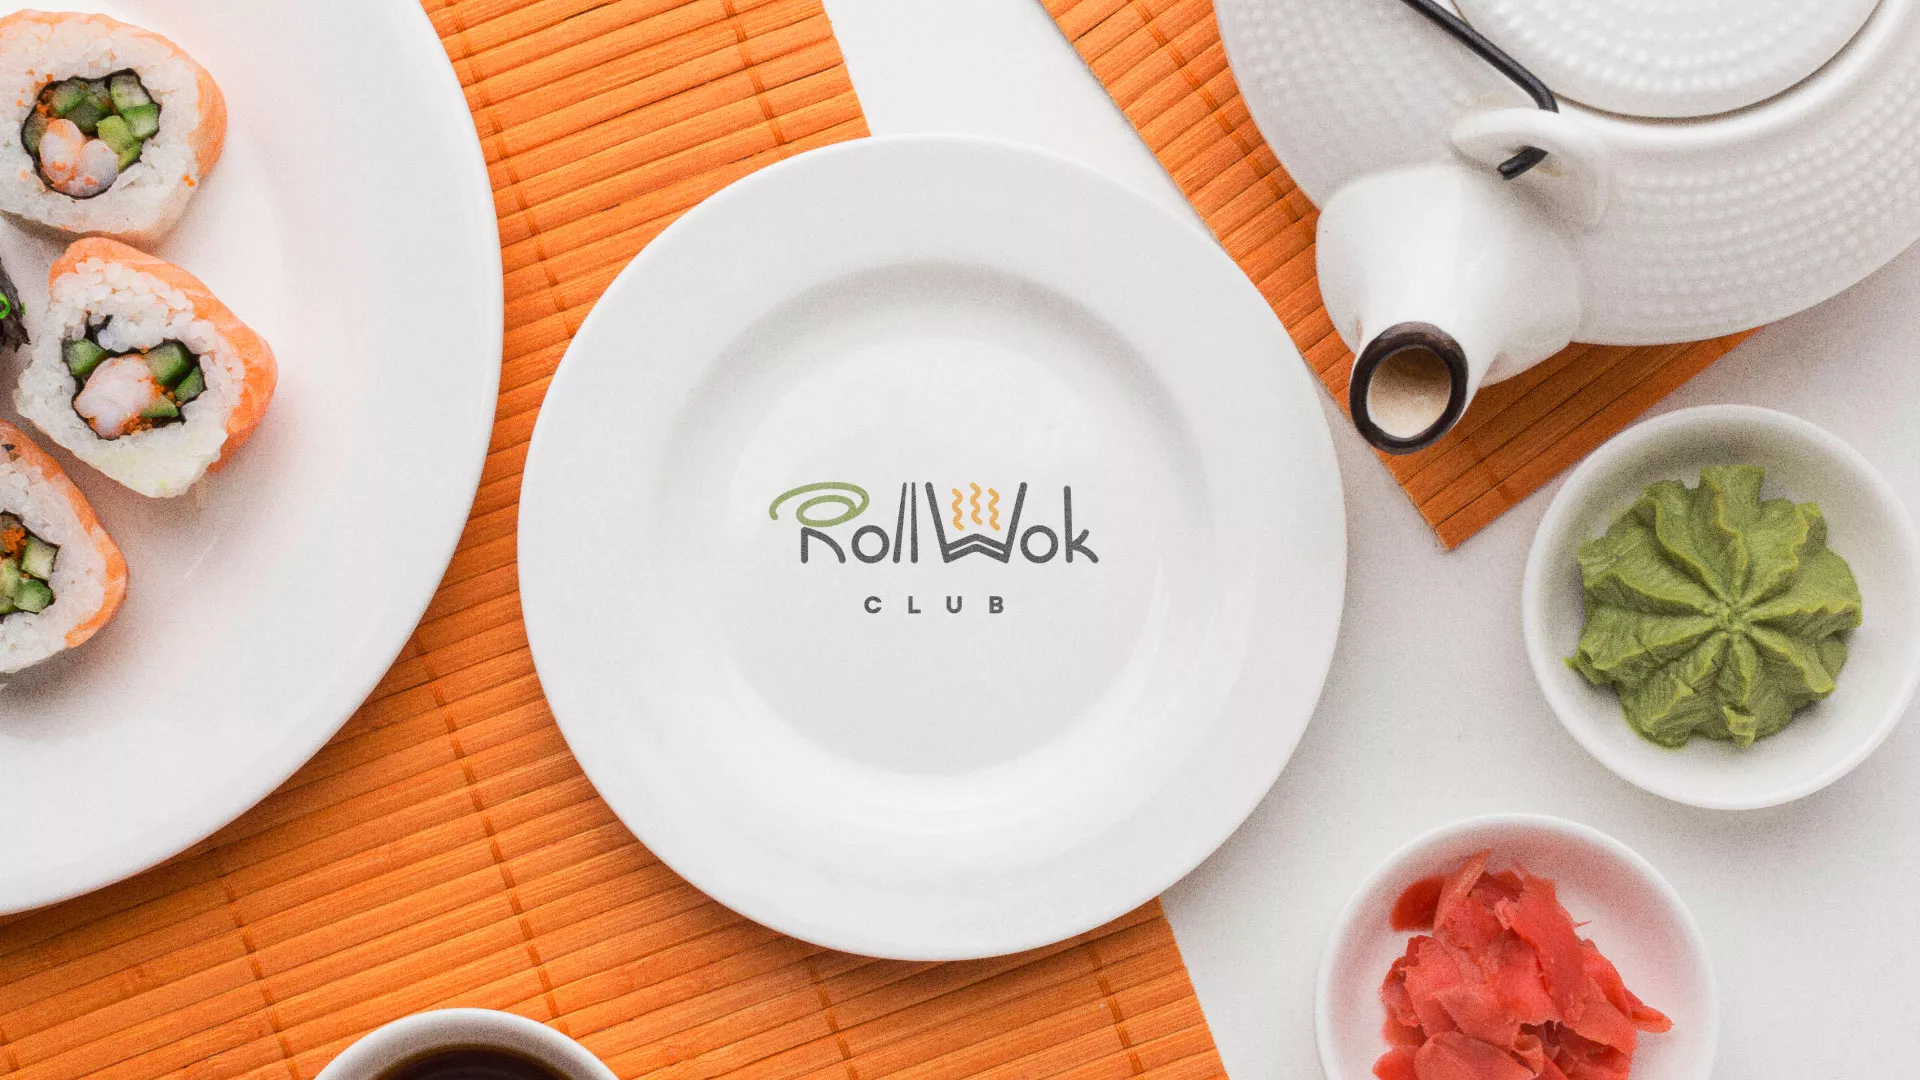 Разработка логотипа и фирменного стиля суши-бара «Roll Wok Club» в Саратове